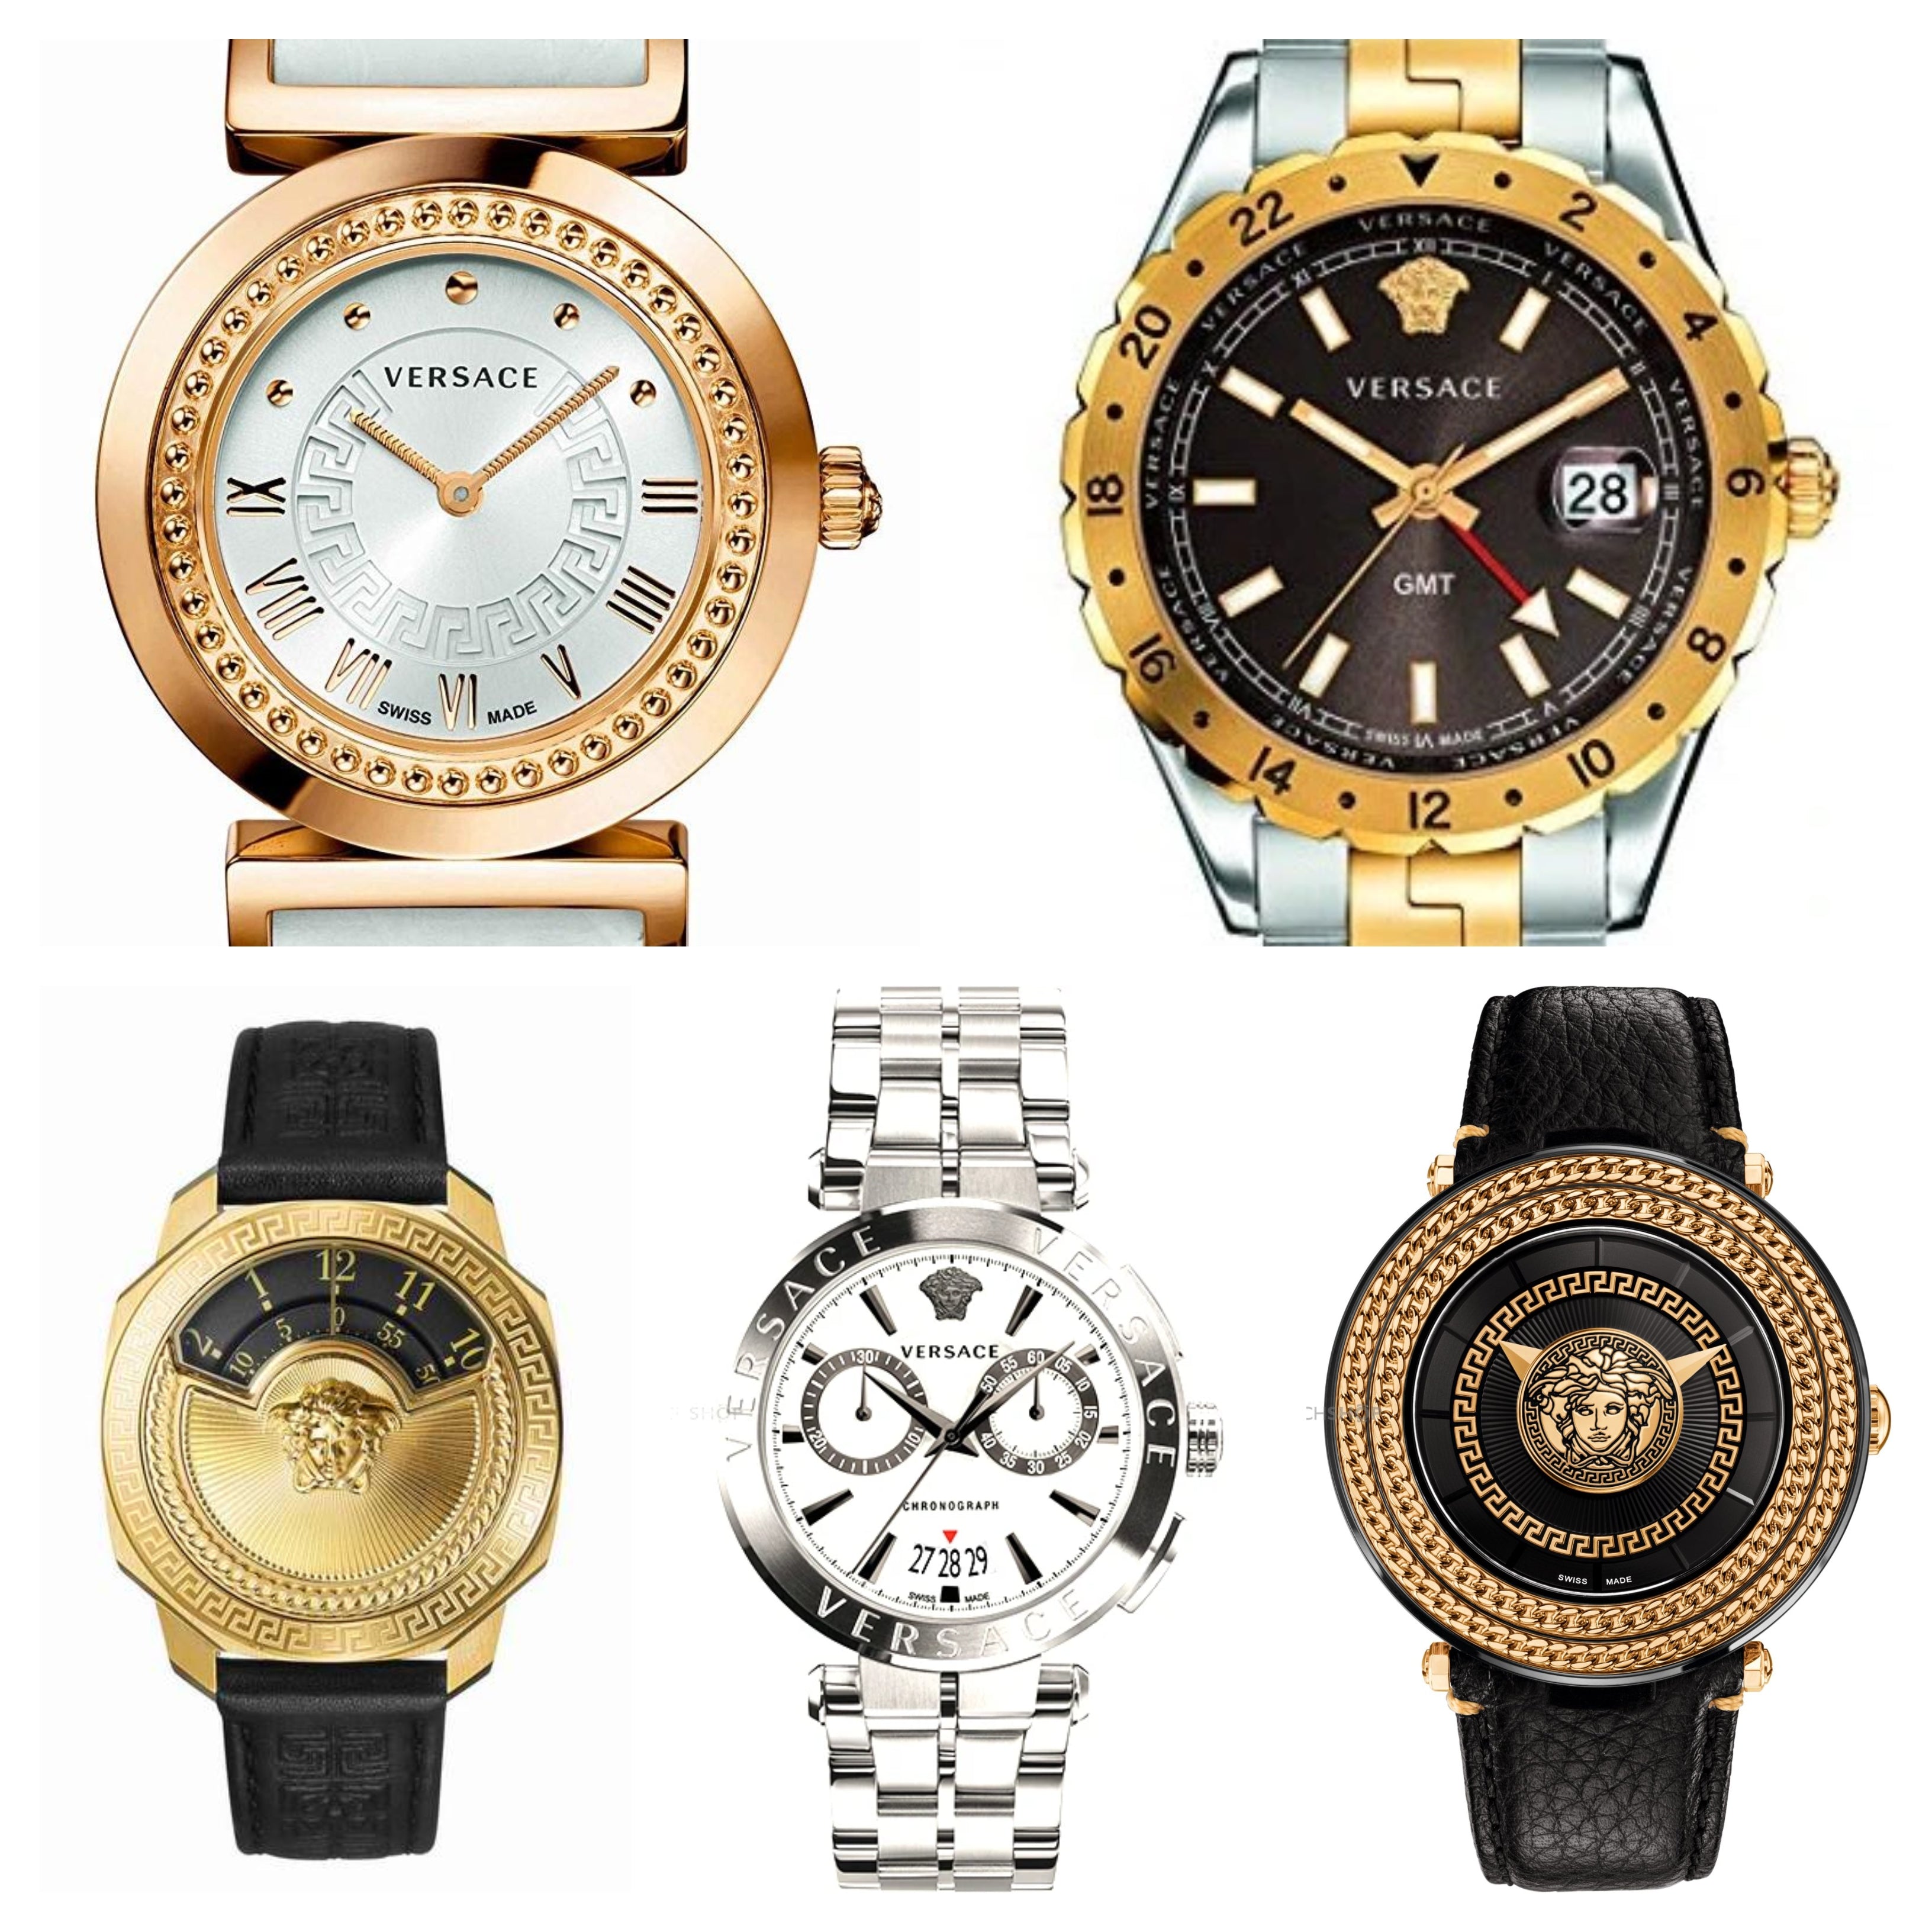 Best Versace Watch under 1500 dollars